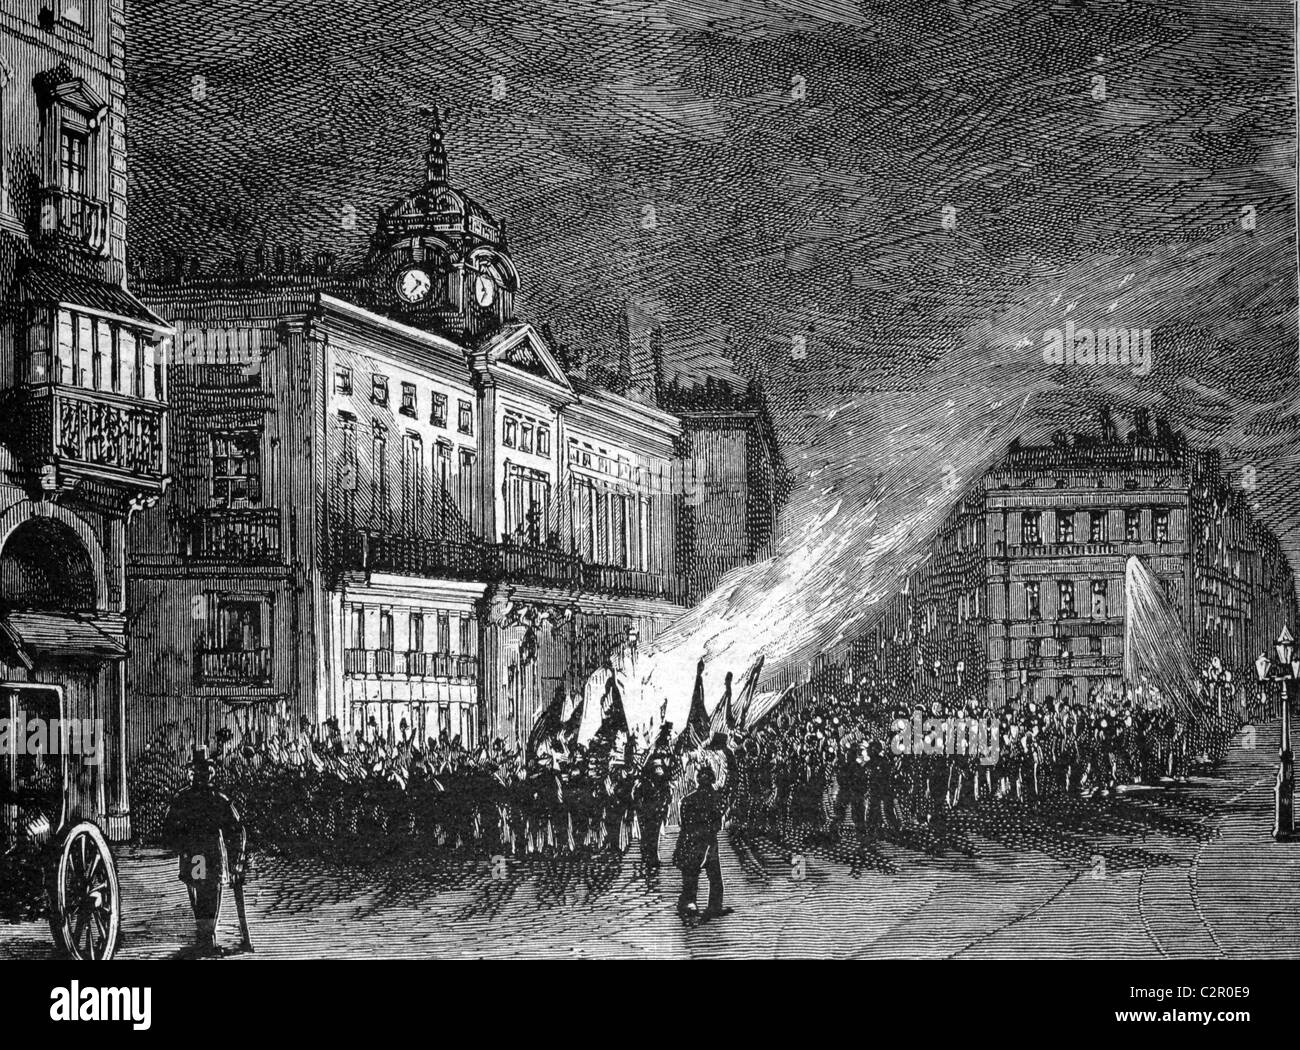 La combustion de la German armoiries sur la Puerta del Sol, Madrid, Espagne, illustration historique, vers 1886 Banque D'Images